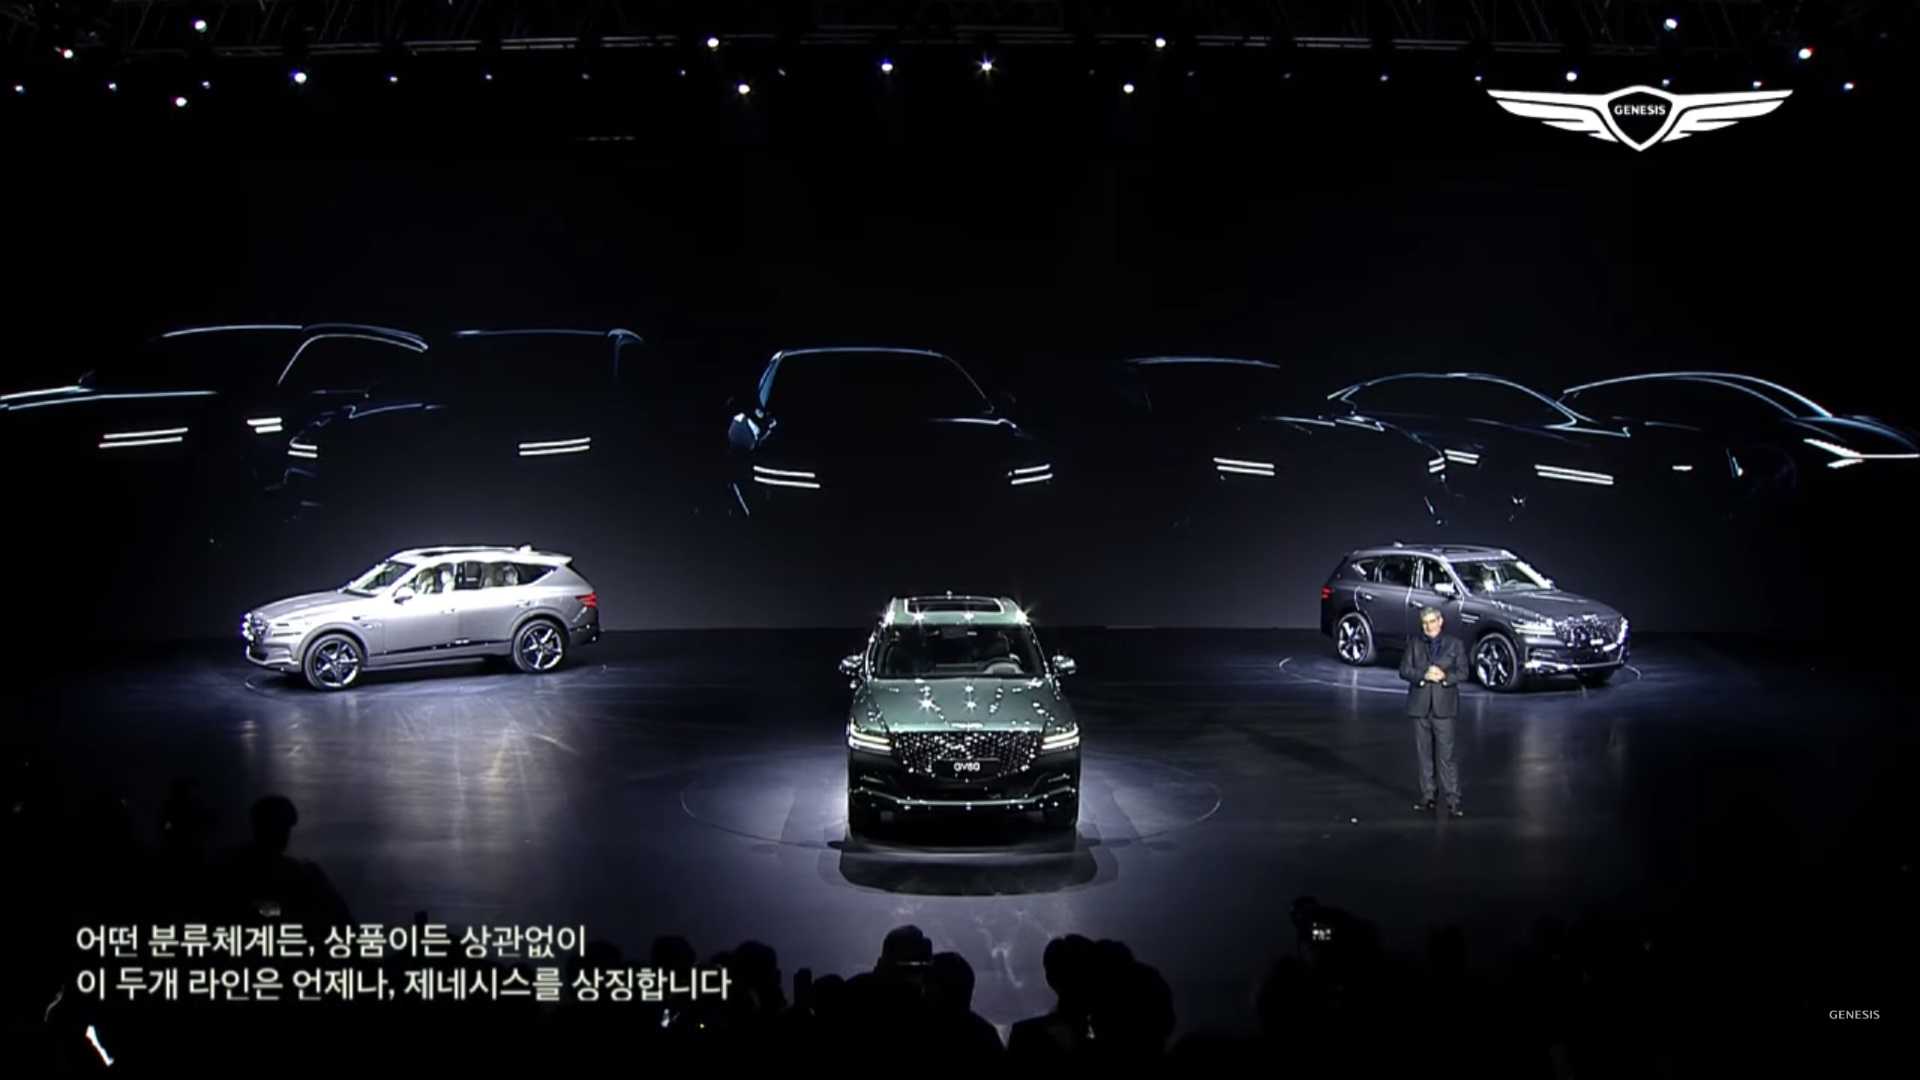 جينيسيس ستقدم 6 سيارات جديدة بحلول عام 2021 9